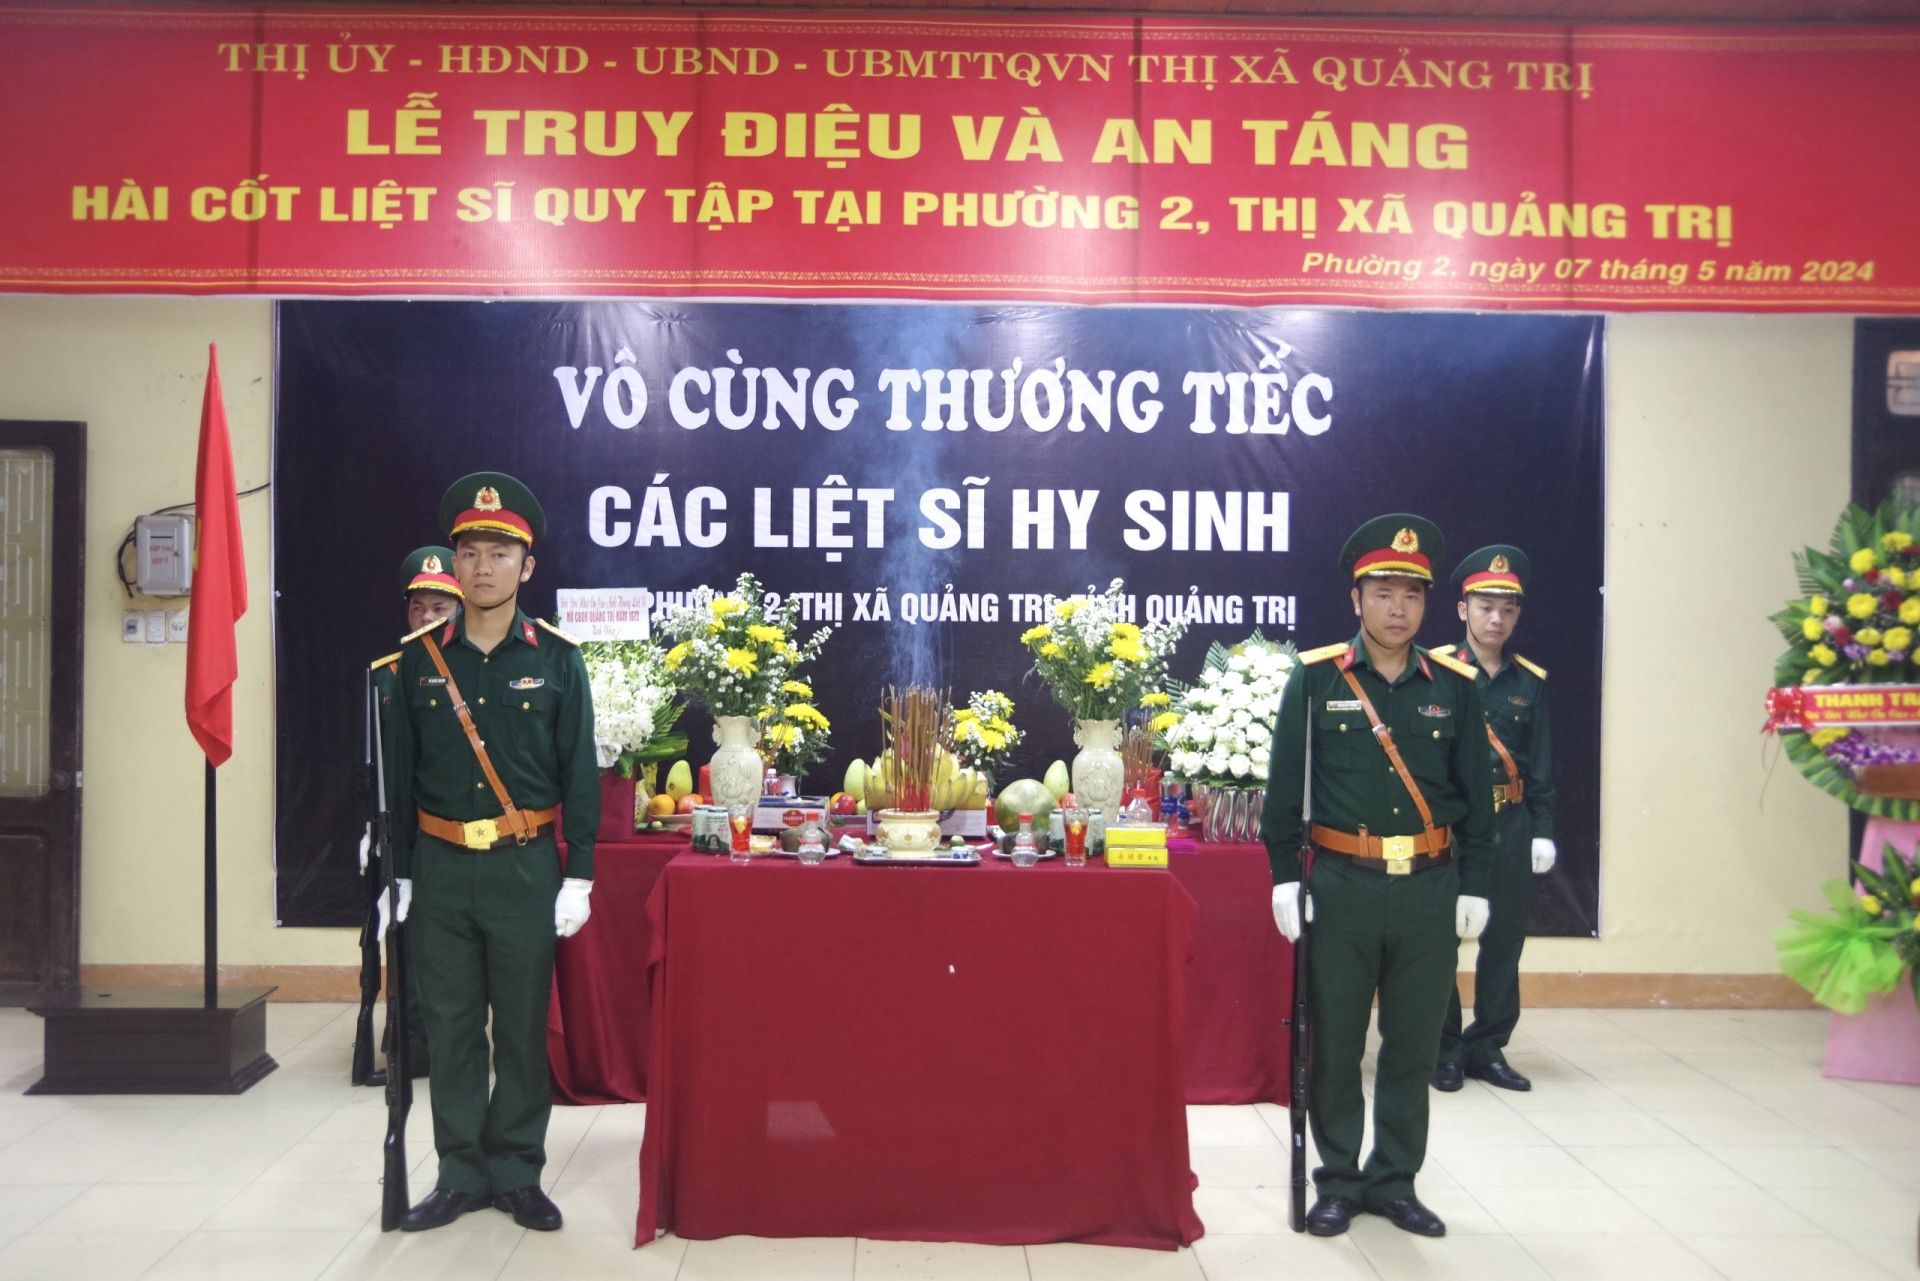 Thị xã Quảng Trị, tỉnh Quảng Trị tổ chức Lễ truy điệu và an táng hài cốt liệt sĩ